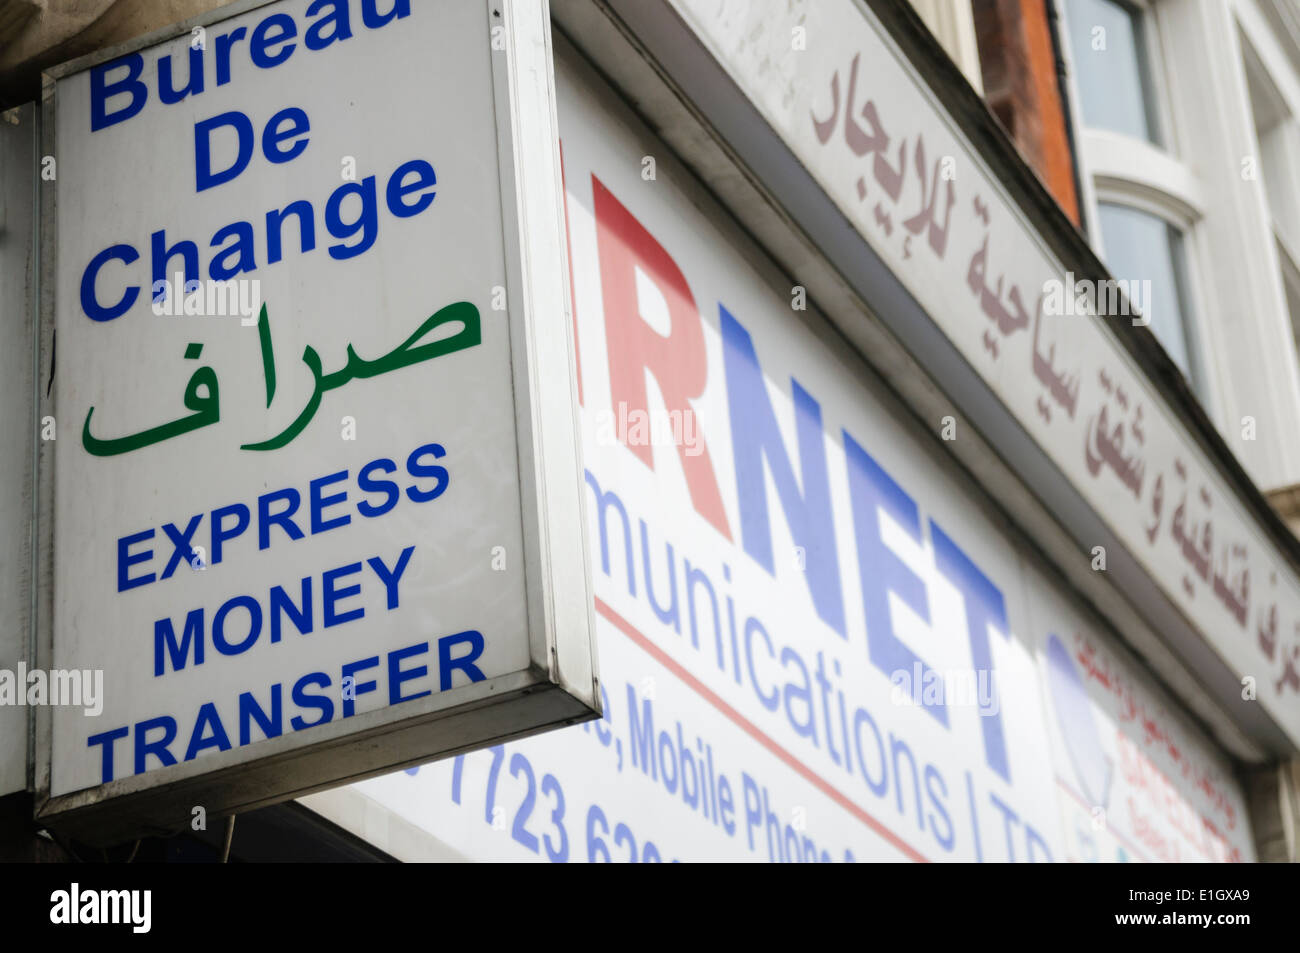 Bureau de change, un service de transfert d'argent, en arabe Banque D'Images